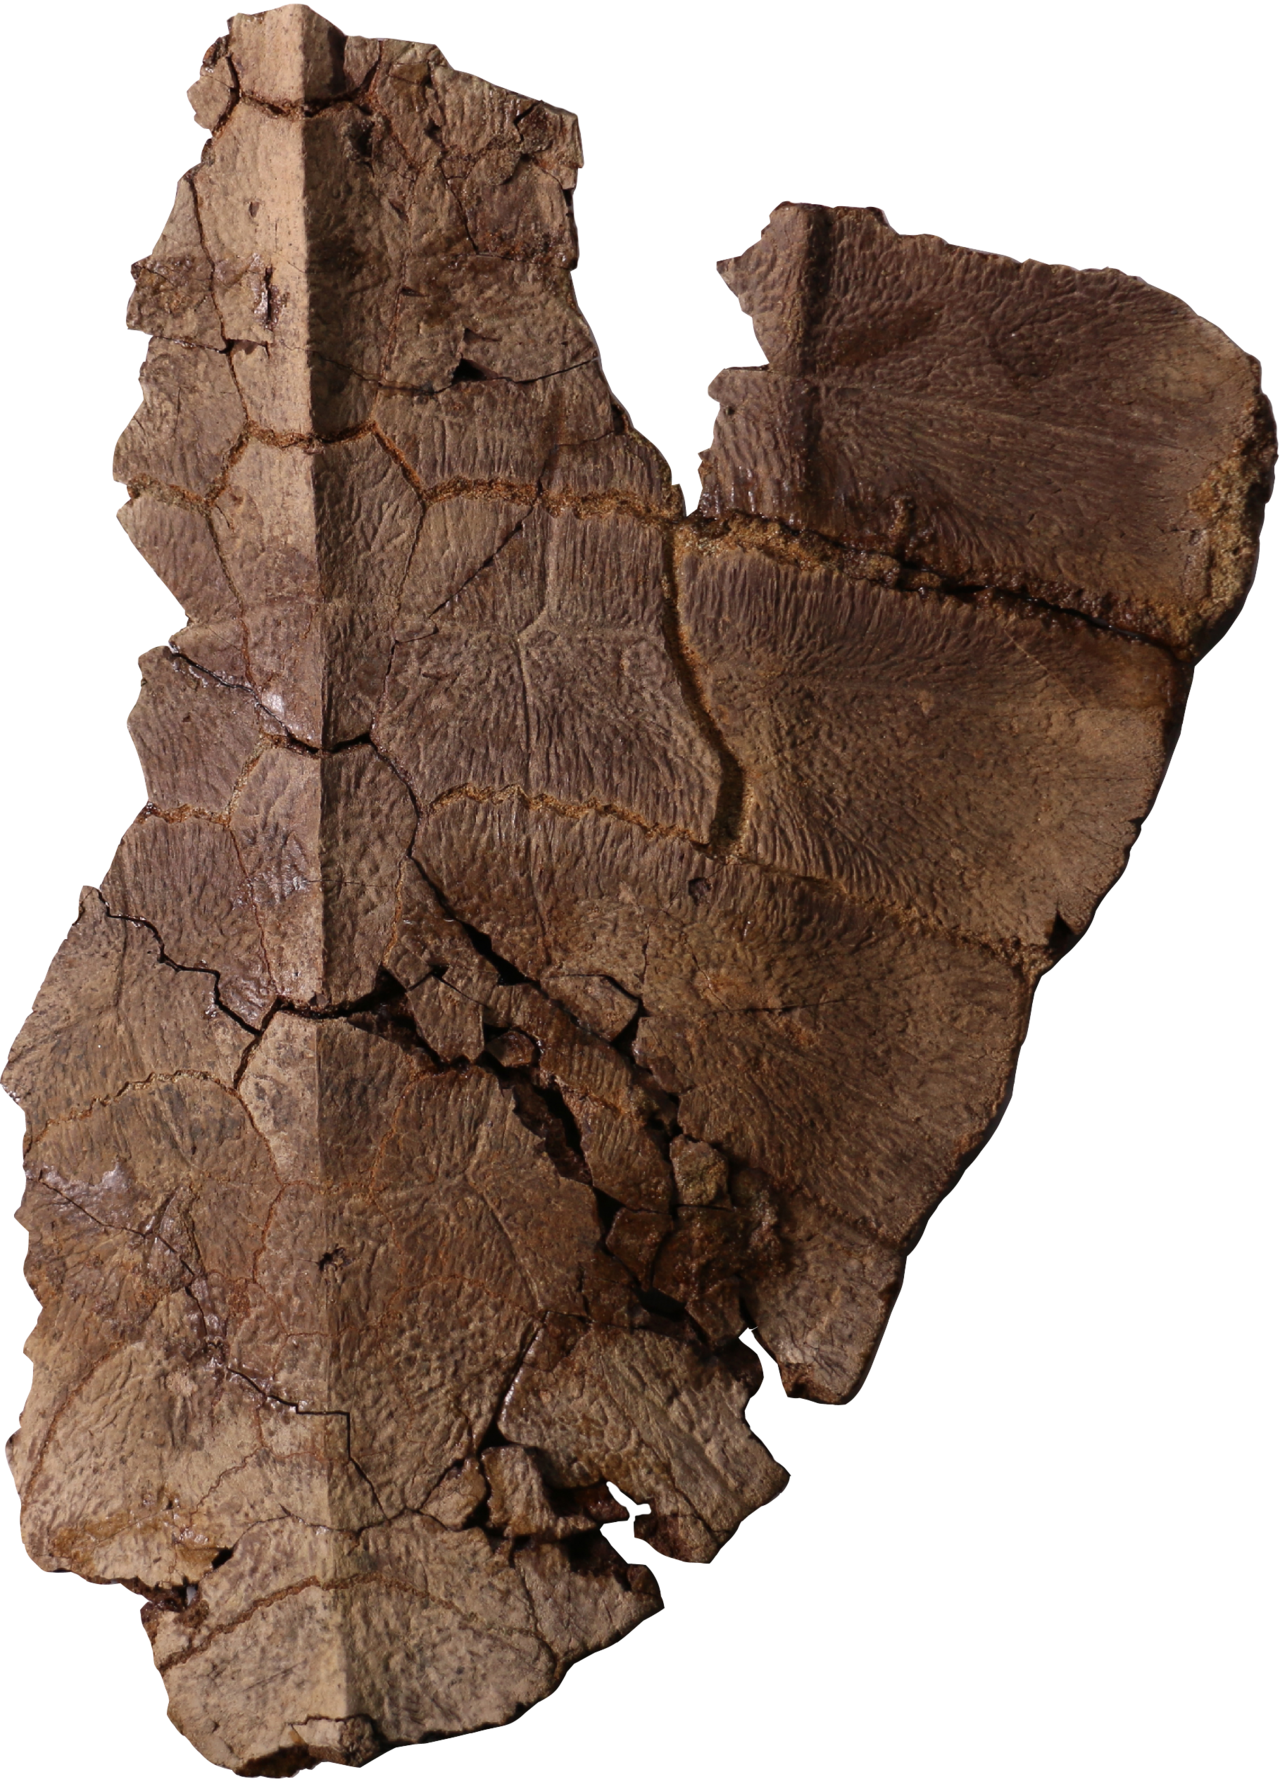 Lo fascinante de este caparazón es que se descubrió en los huesos fósiles la preservación de células, indicando la posible presencia de restos de ADN. La preservación de células solo había sido reportada en dos especies de dinosaurios en todo el registro fósil de vertebrados del planeta.